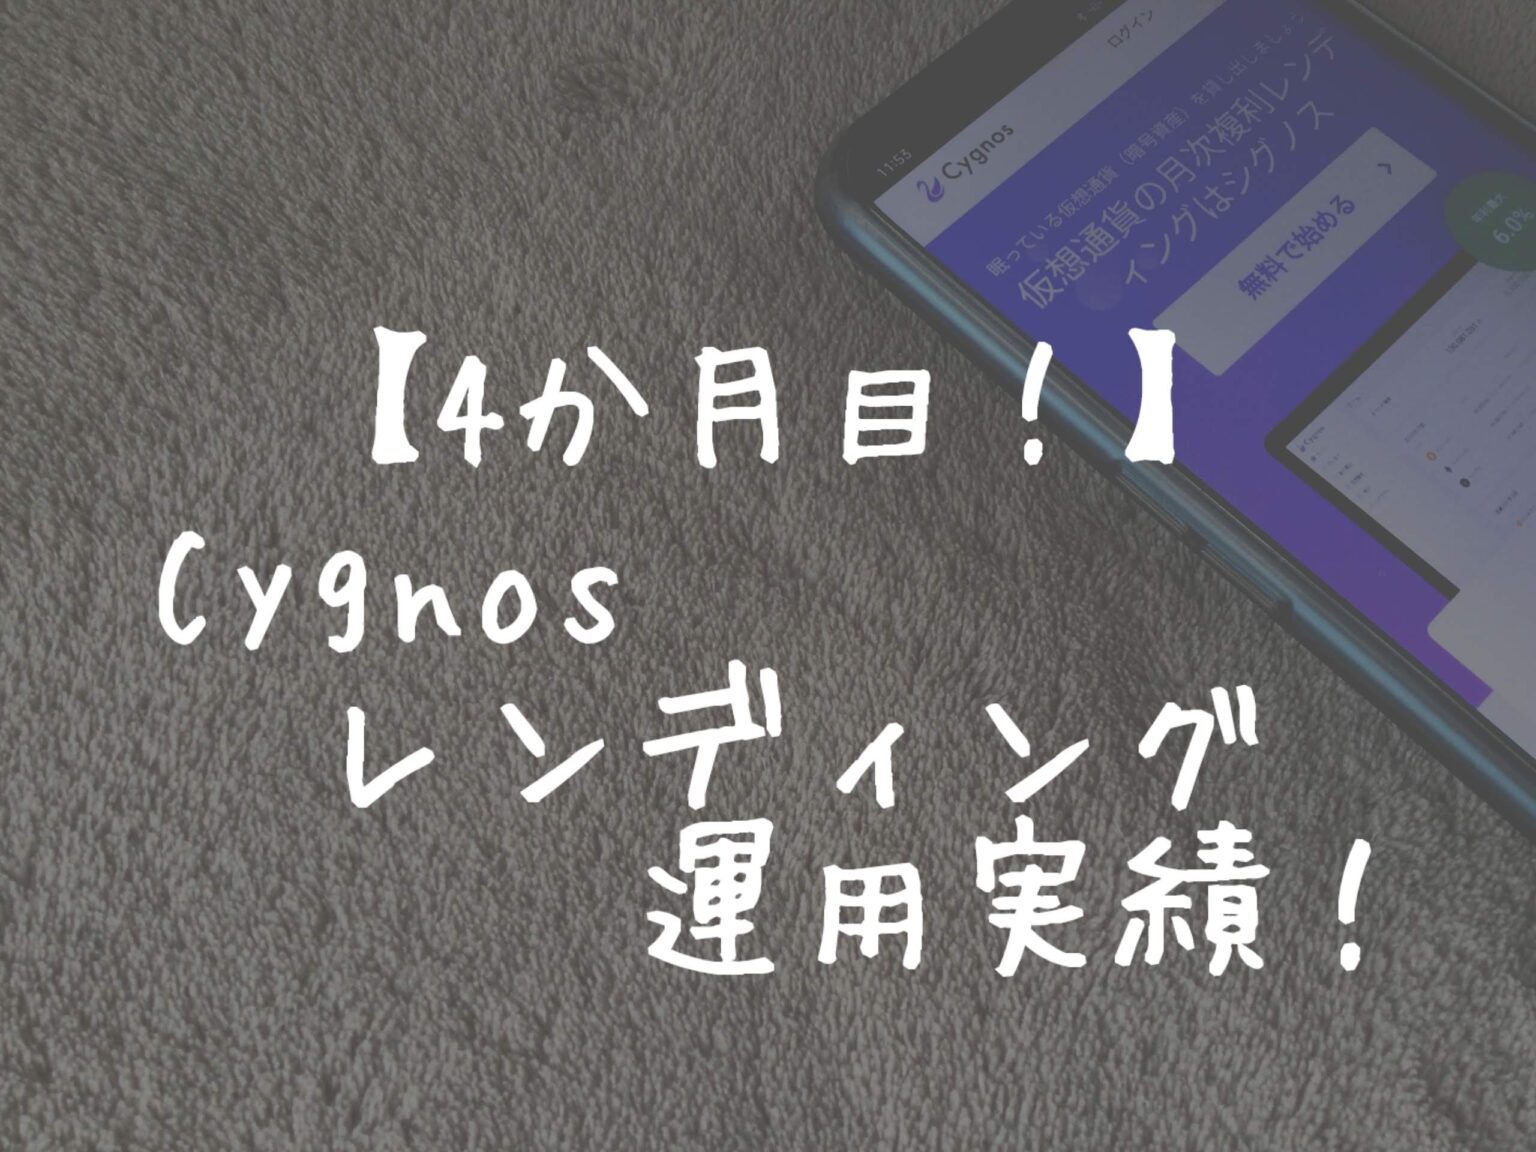 【893円付与】Cygnos（シグノス）レンディング運用4か月目の実績！